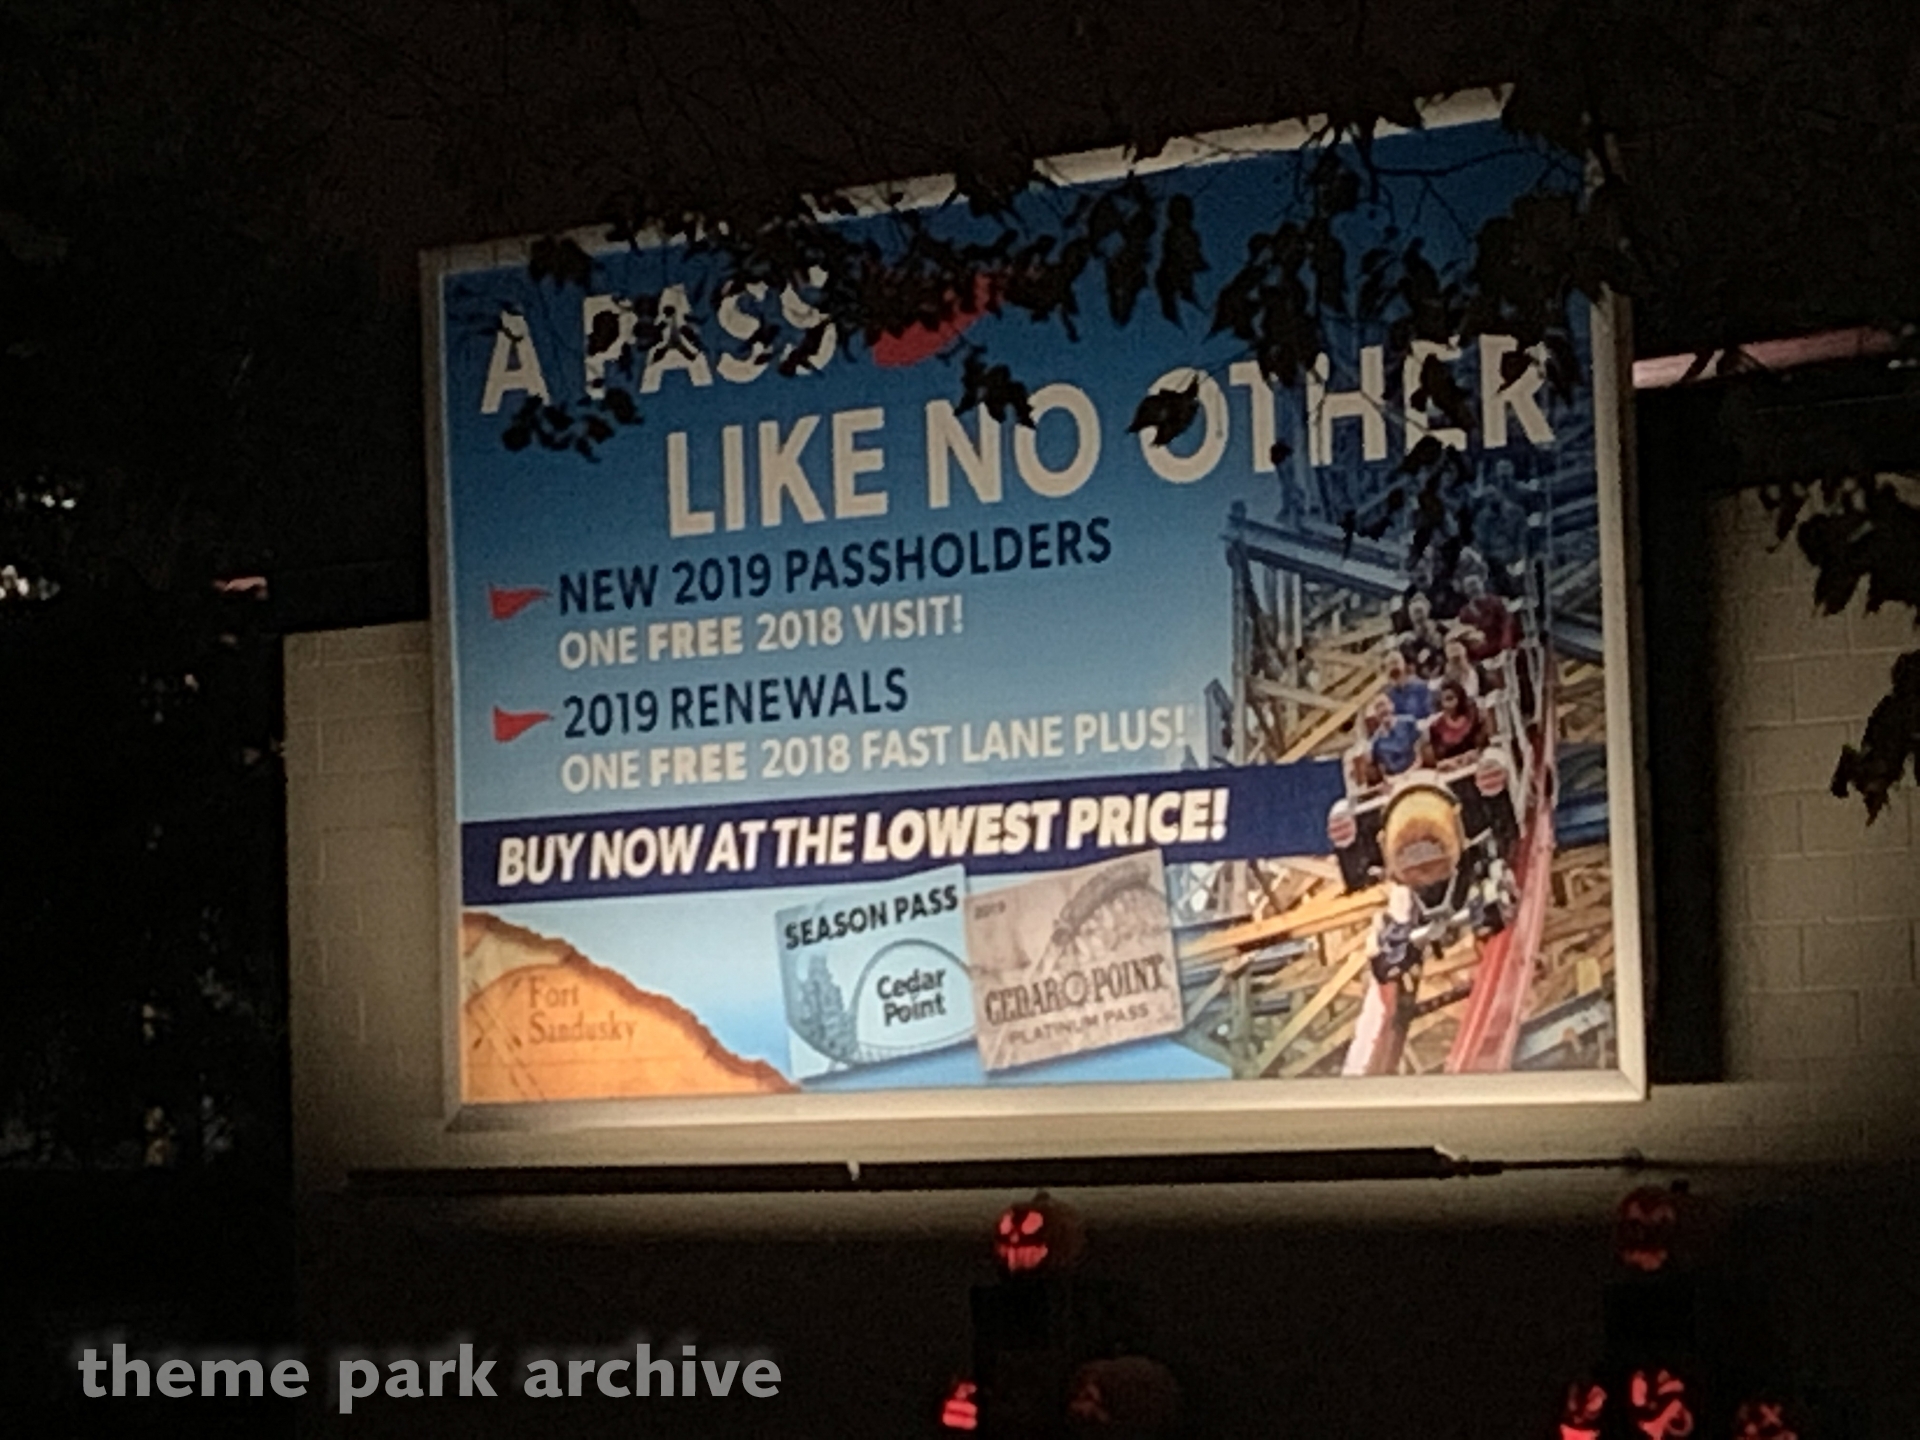 Cedar Point Halloweekends 2018 | Theme Park Archive